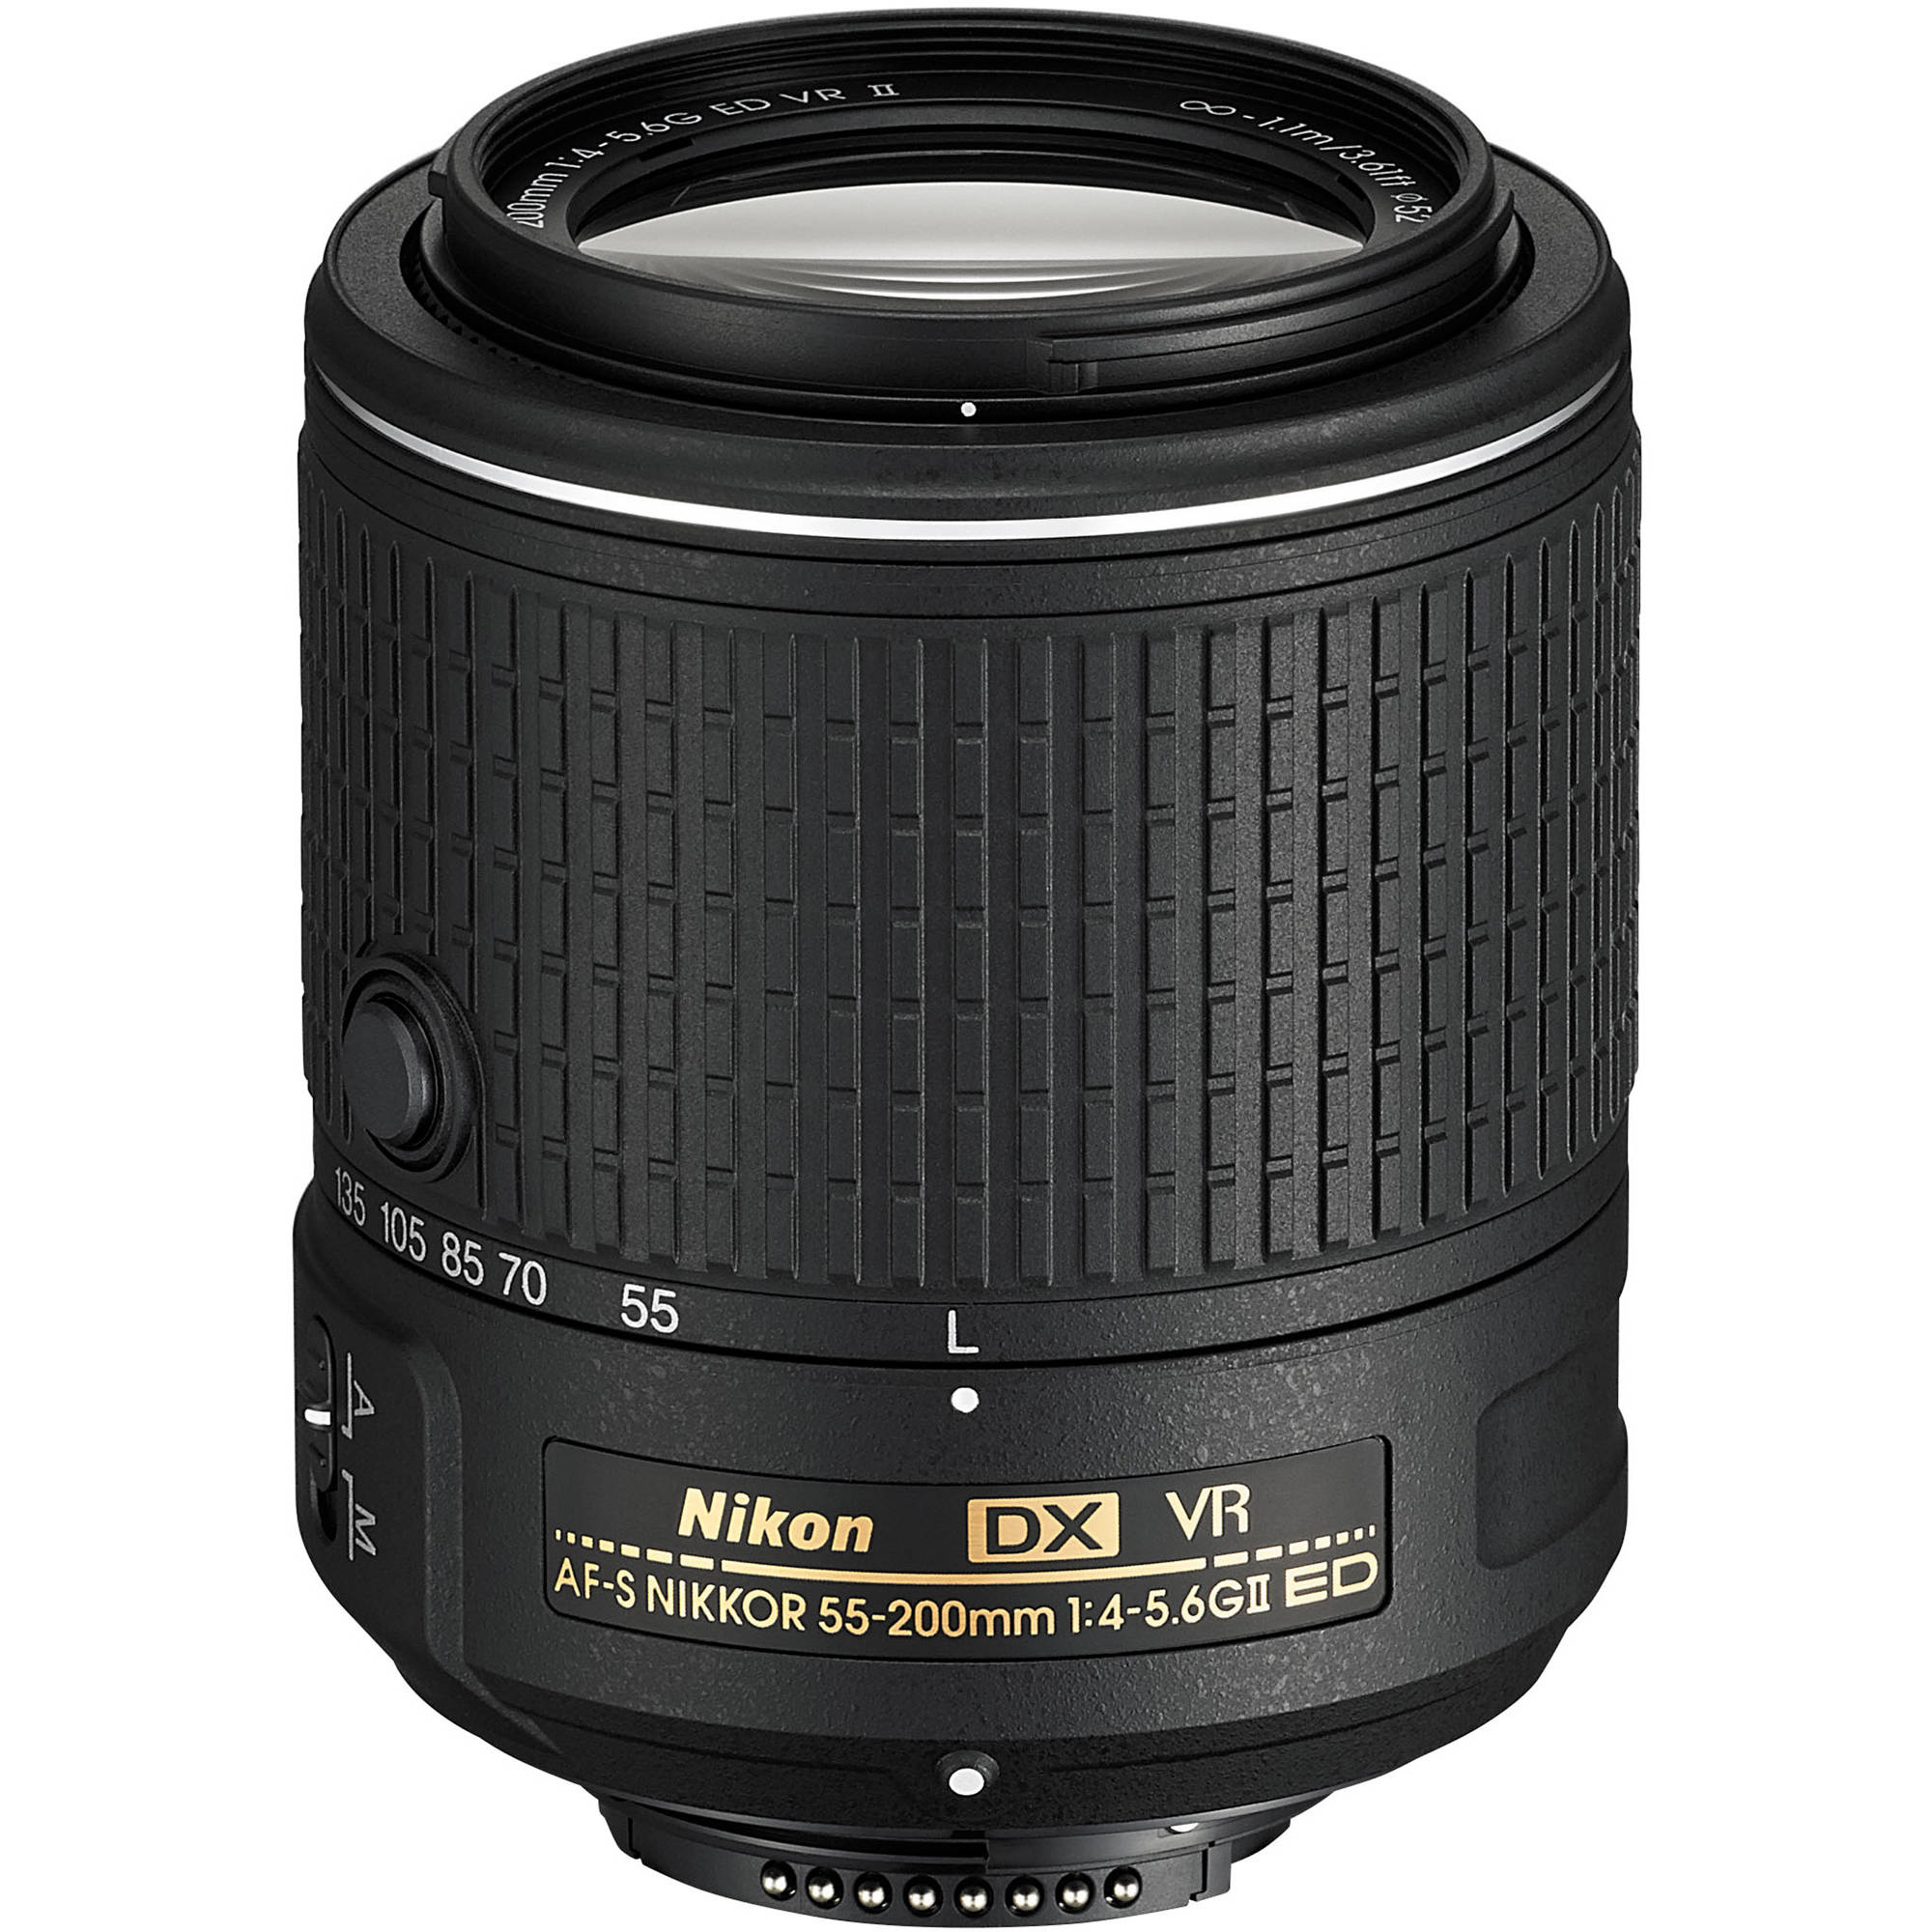 Nikon AF-S DX NIKKOR 55-200mm f/4-5.6G ED VR II Lens 20050 B&H